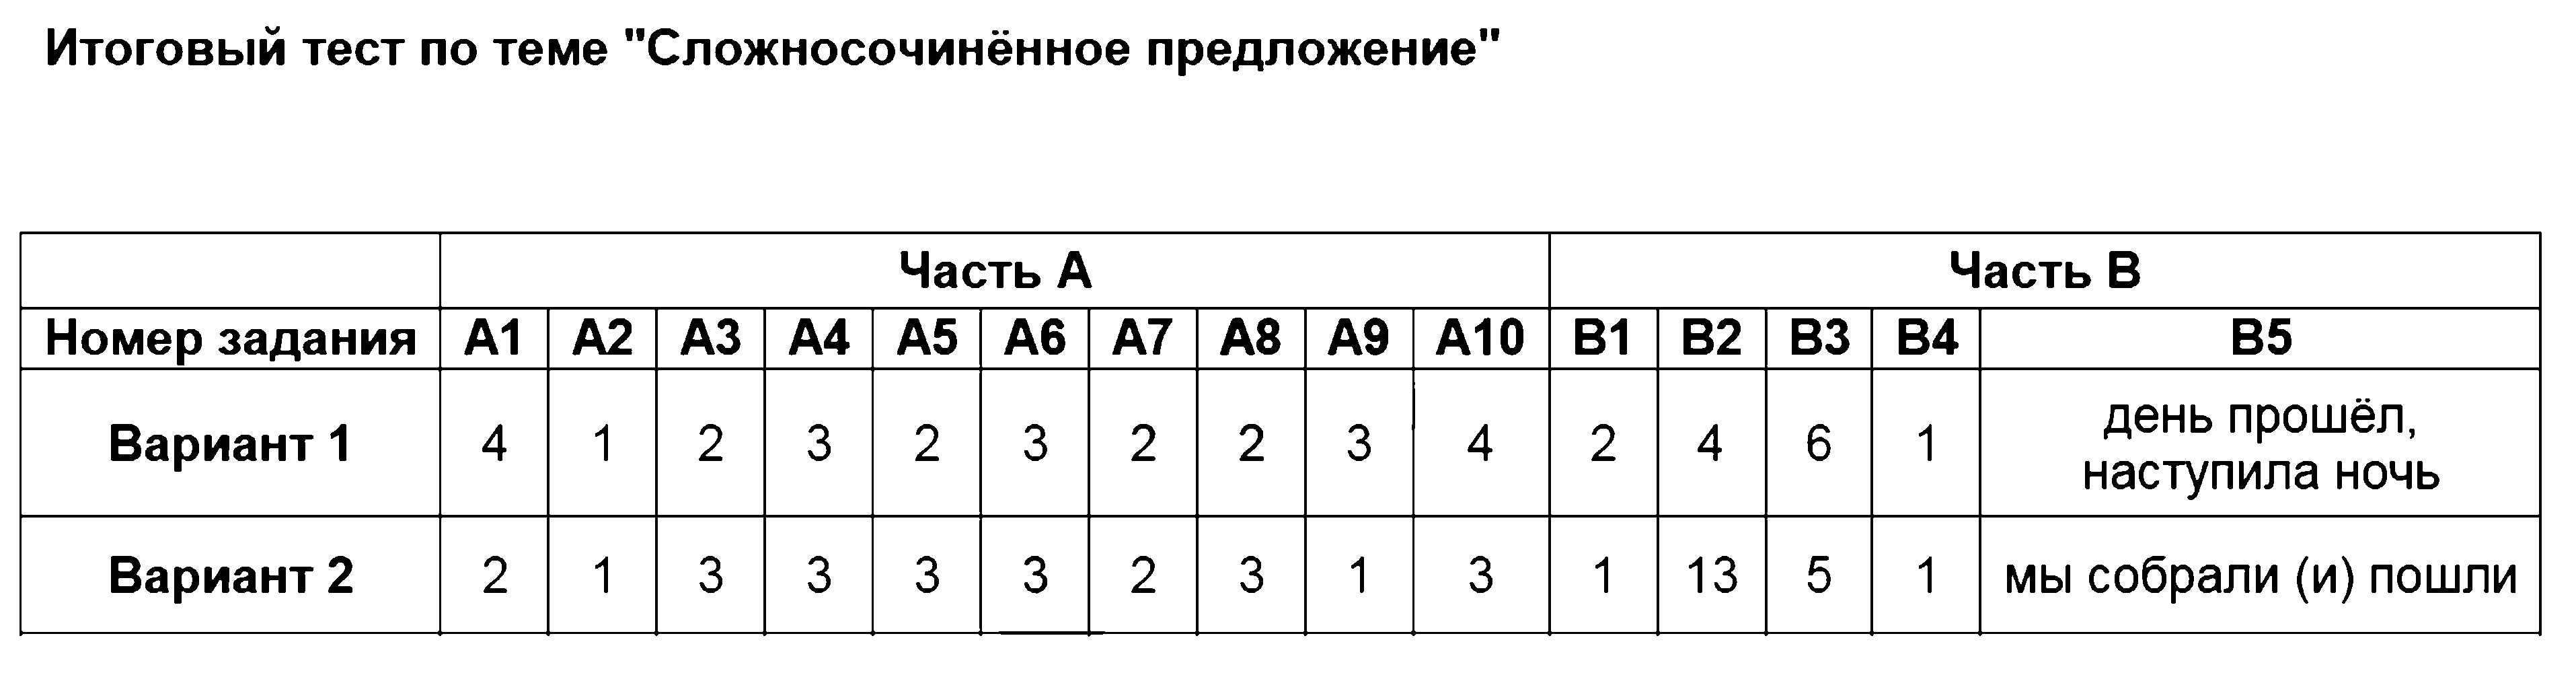 ГДЗ Русский язык 9 класс - Итоговый тест по теме Сложносочинённое предложение